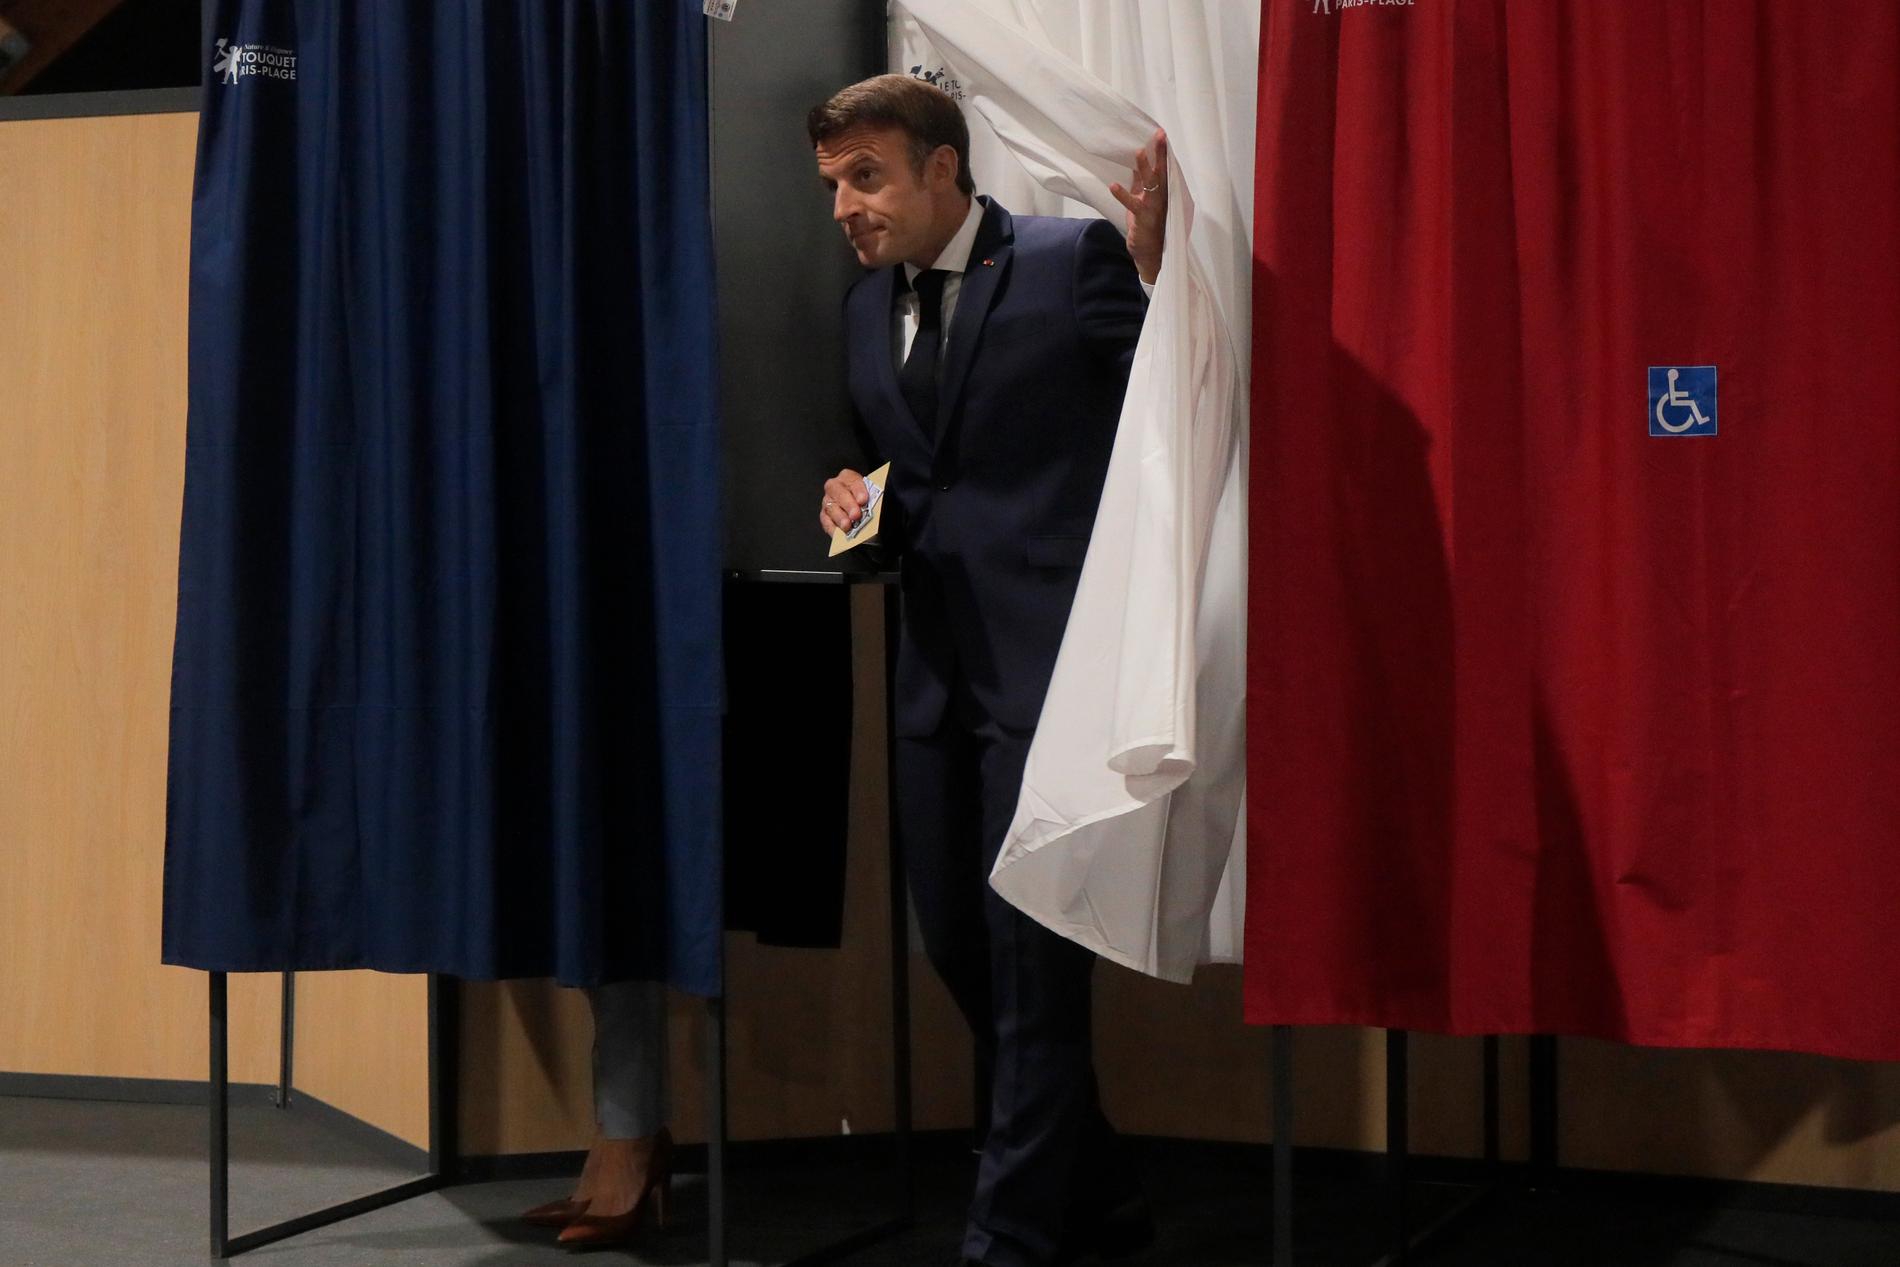 Frankrikes president Emmanuel Macrons allians Tillsammans har även i fortsättningen flest mandat i parlamentet – men långt ifrån egen majoritet.